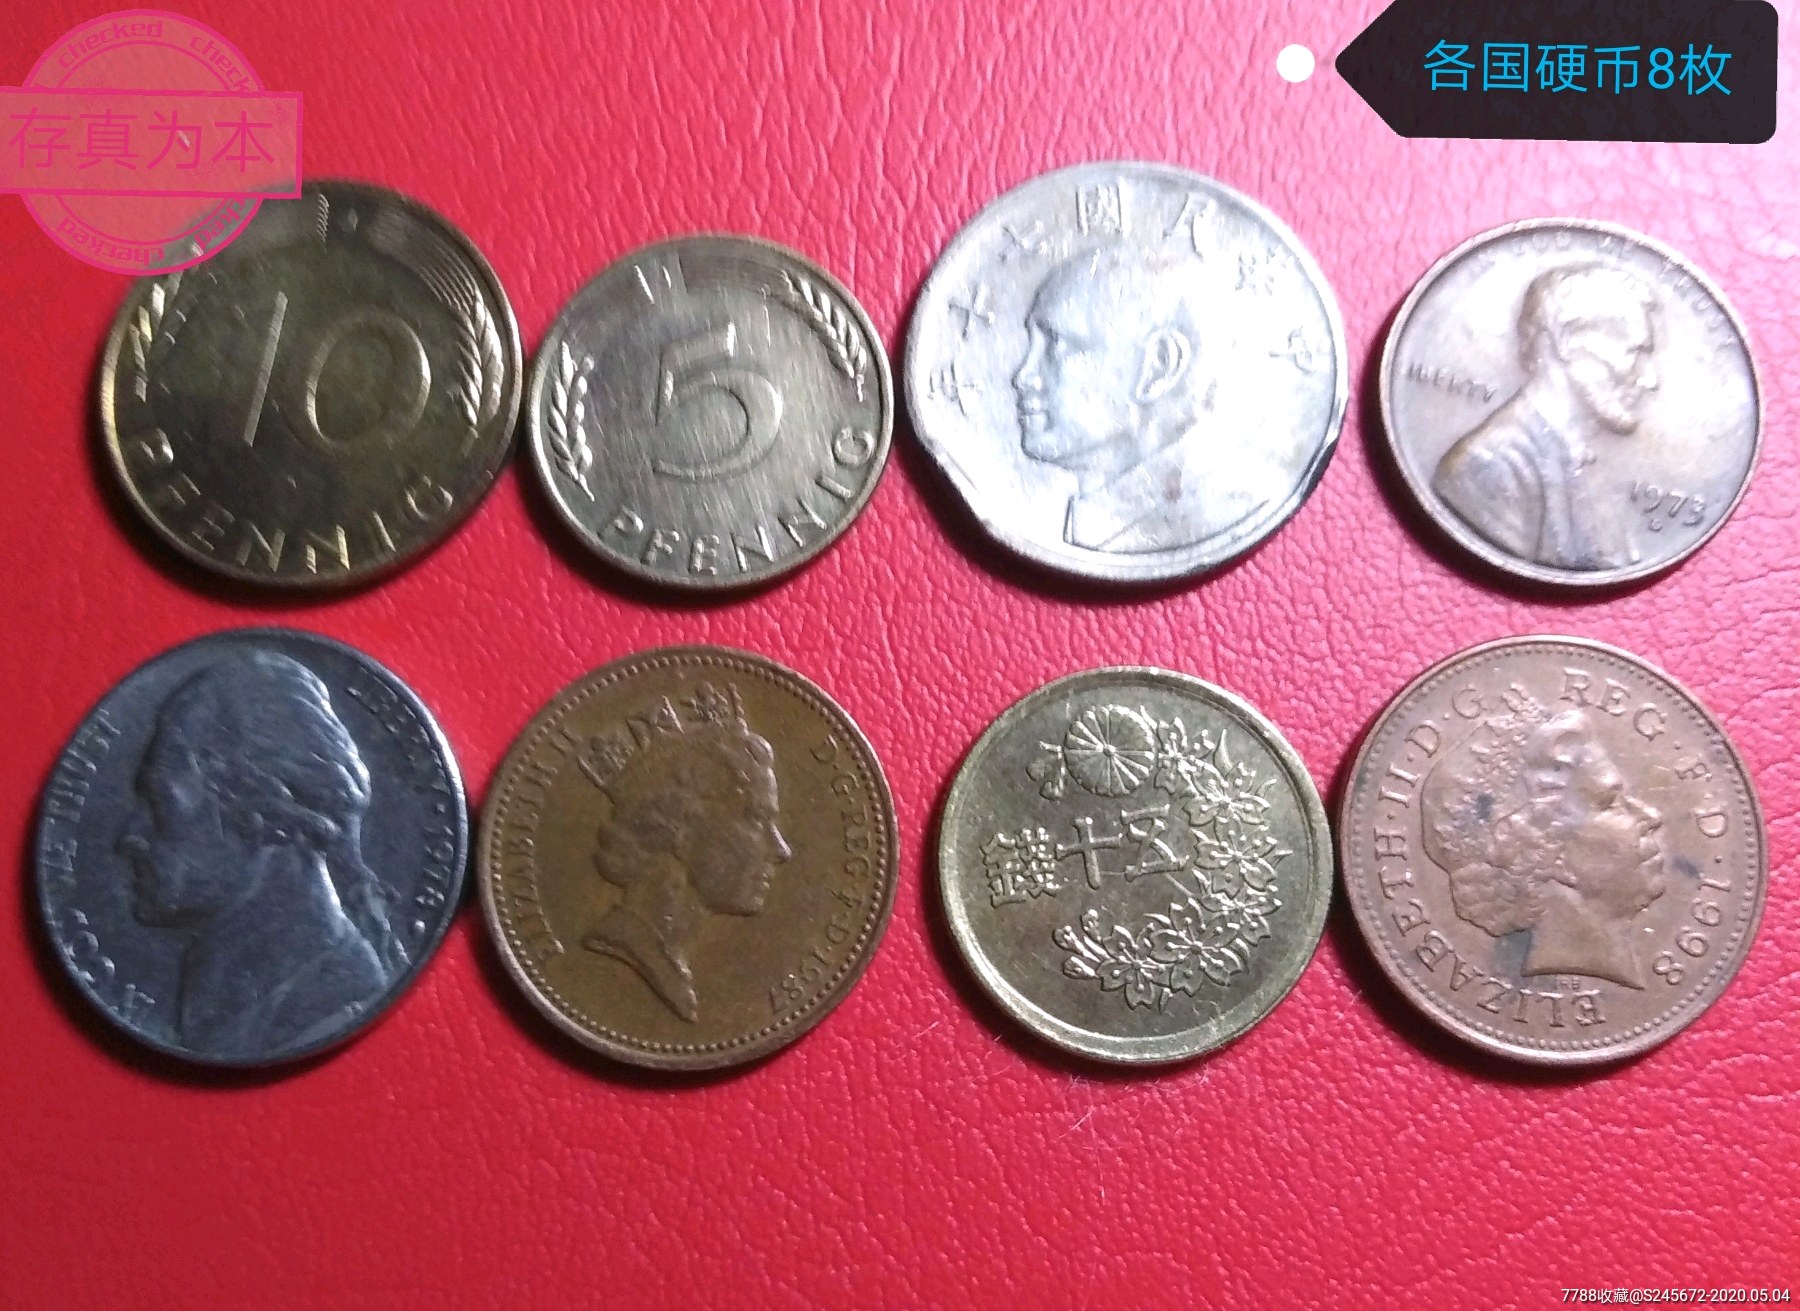 200504-7 各国硬币8枚